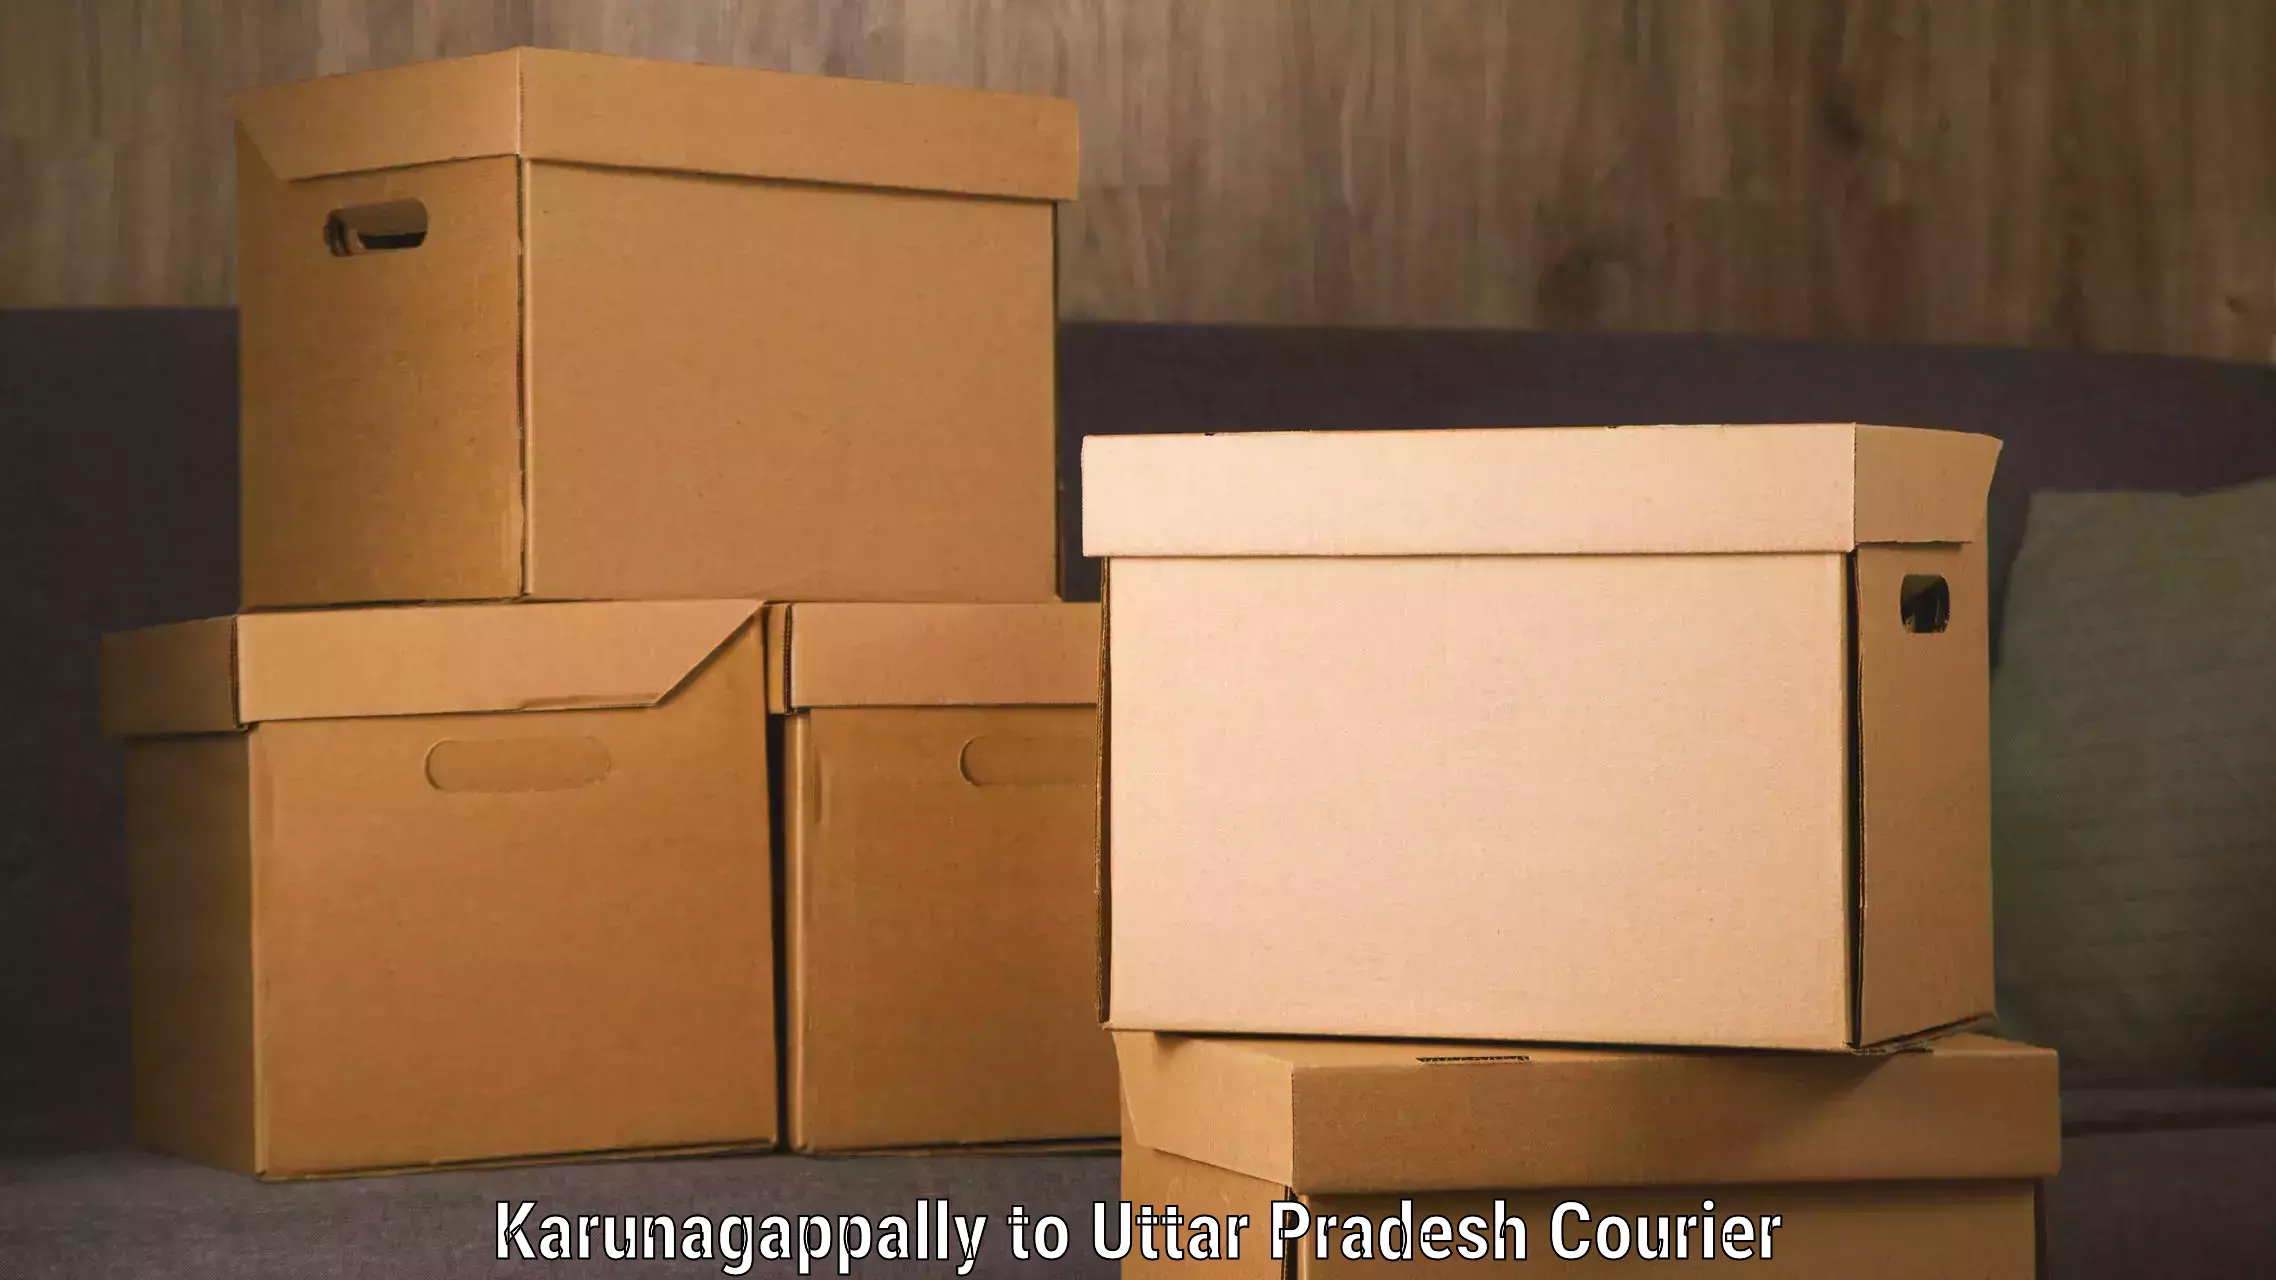 Global shipping networks Karunagappally to Chitrakoot